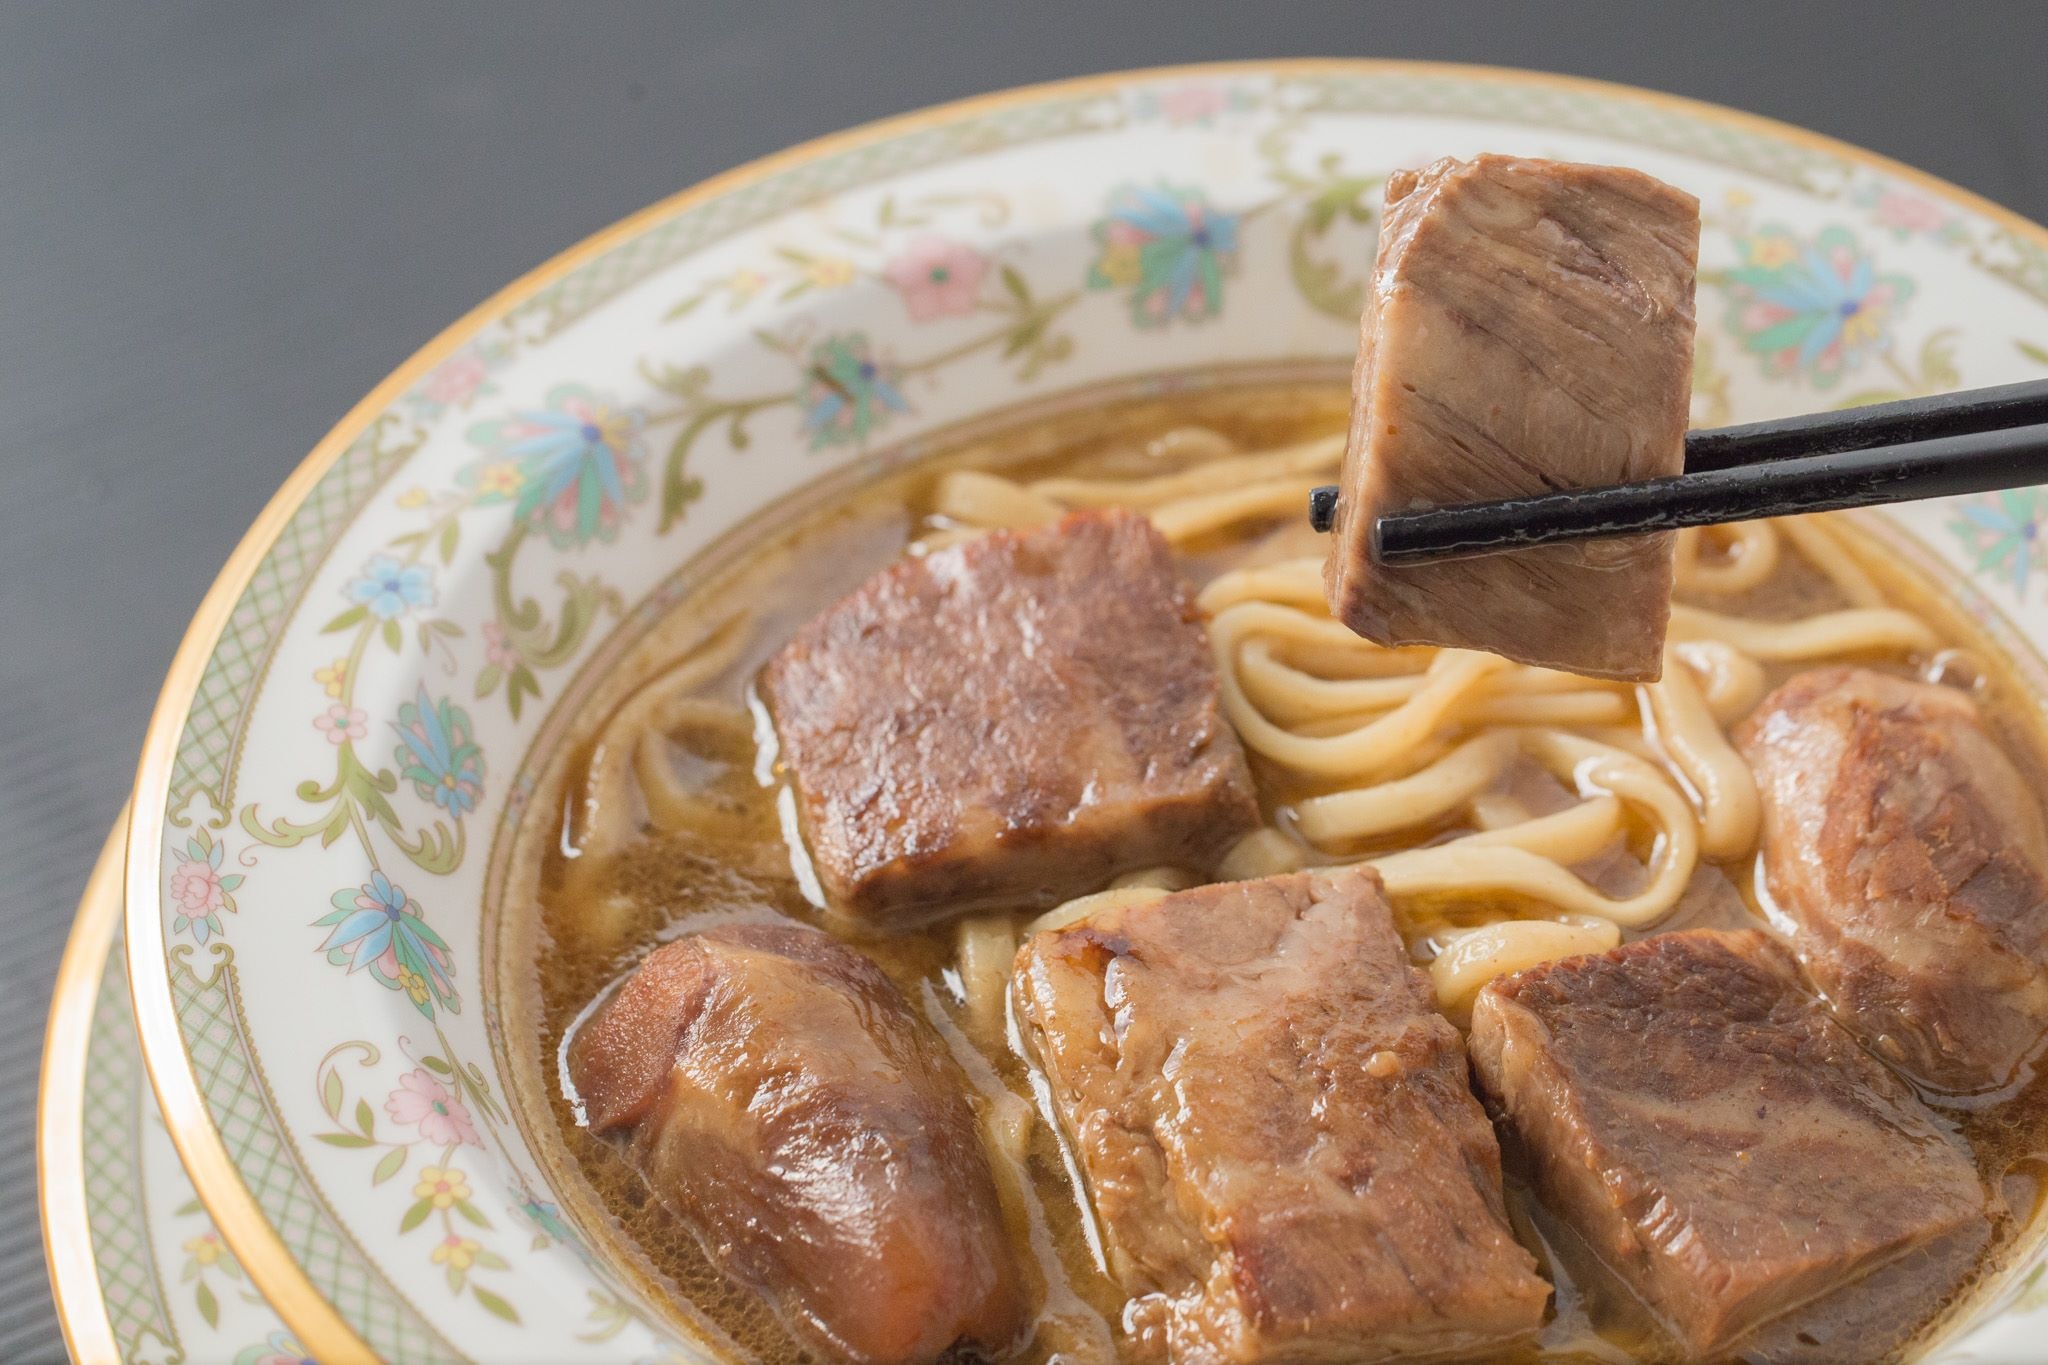 Mì thịt bò của ông Wang hiện nay được coi là huyền thoại trong ngành công nghiệp thực phẩm